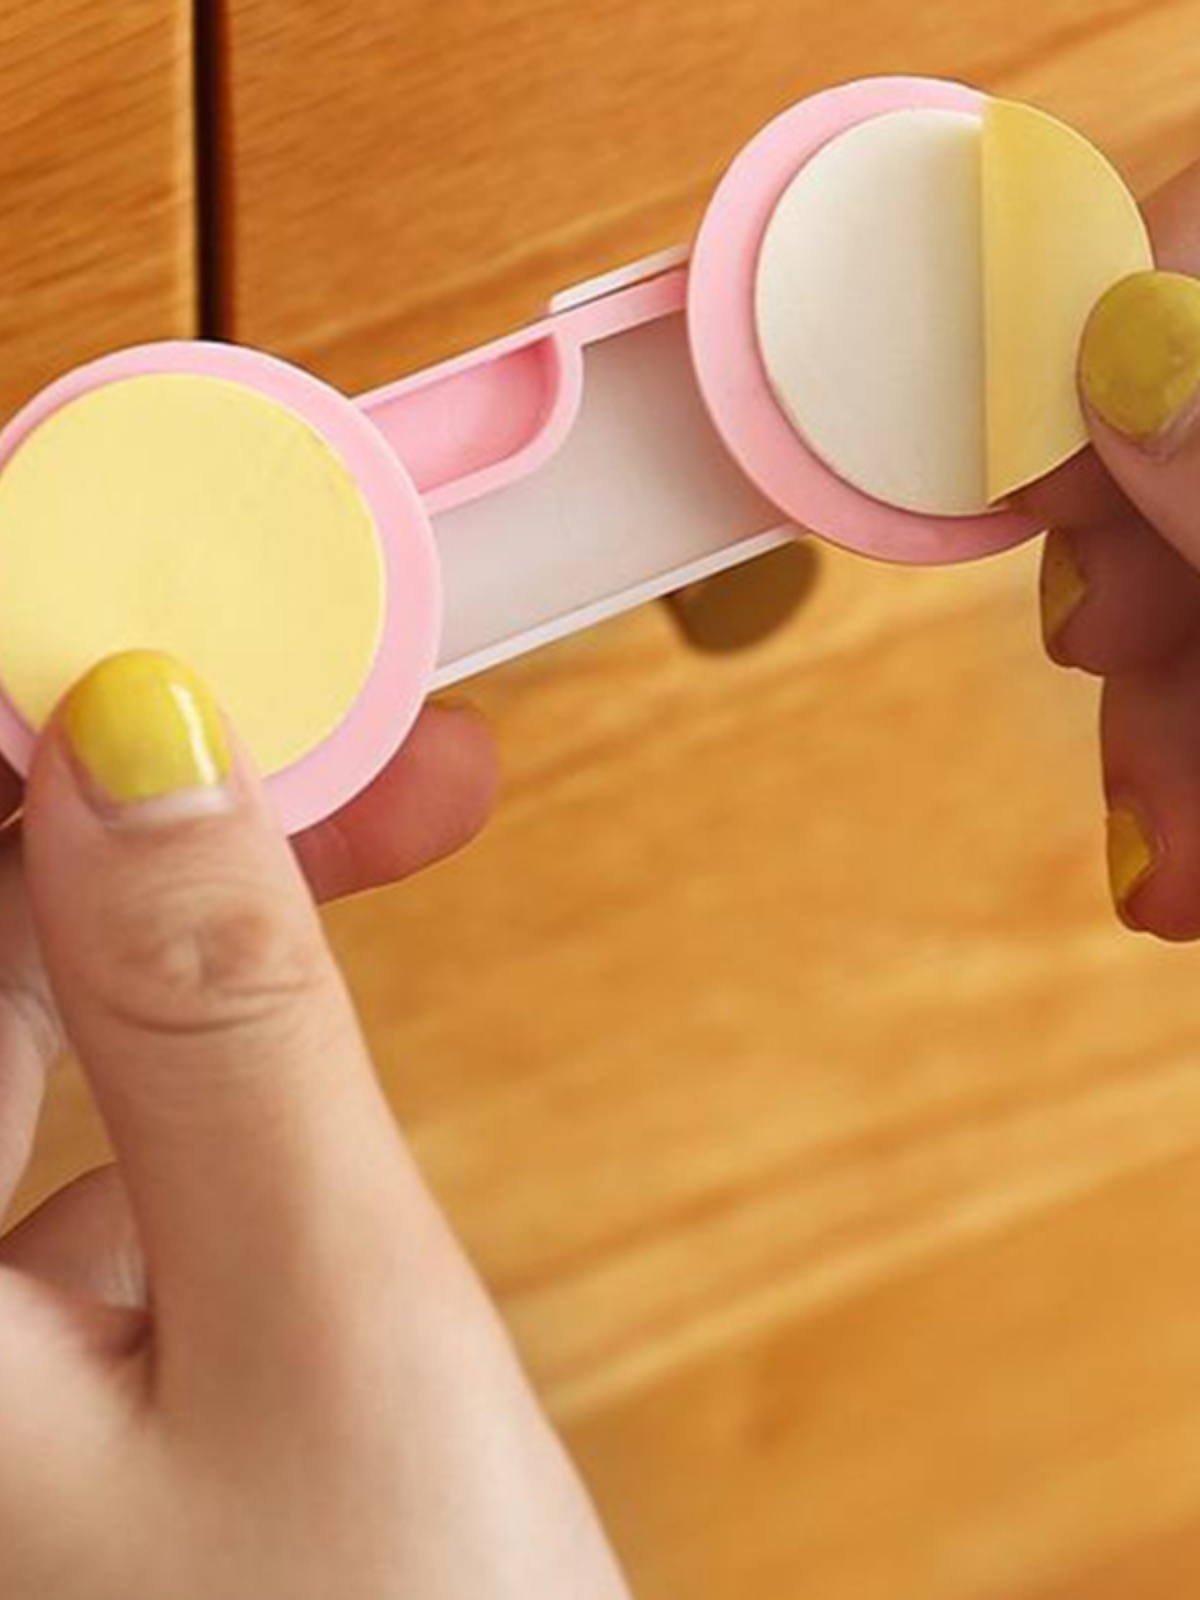 防宝宝抽屉锁儿童安全锁柜门婴儿柜子冰箱锁防护安全扣锁扣防夹手